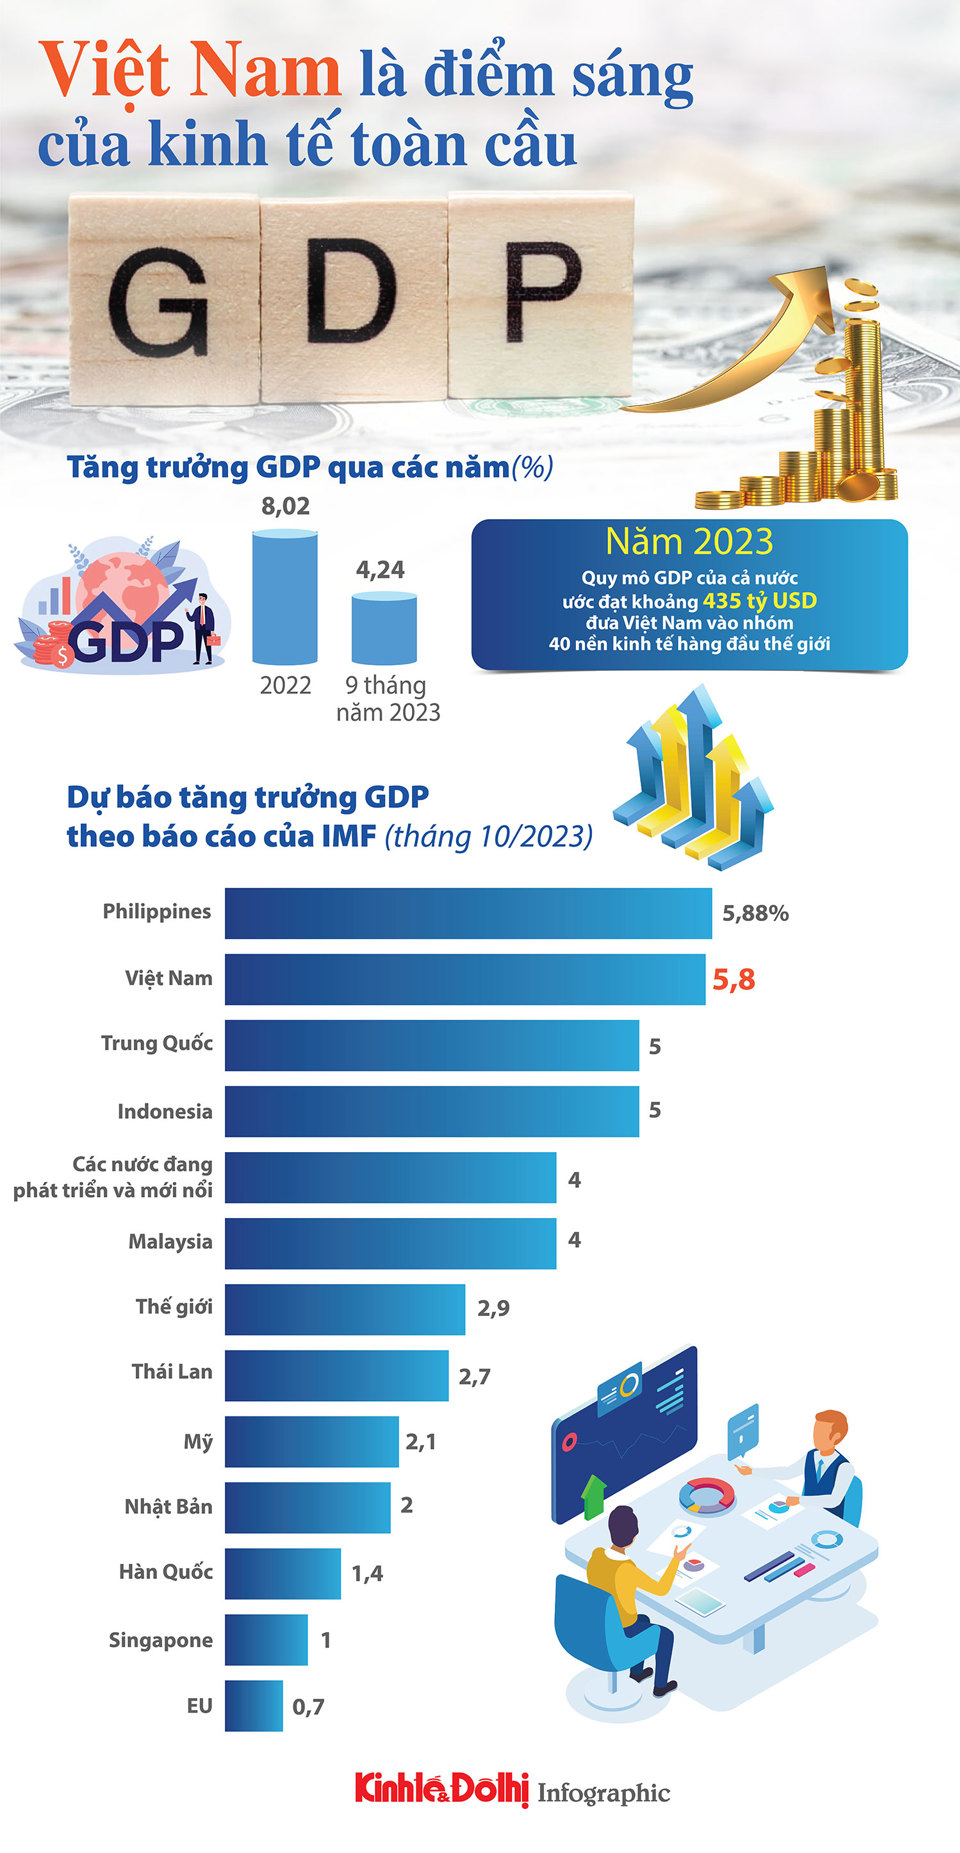 Kinh tế Việt Nam dần lấy lại đà tăng trưởng - Ảnh 1